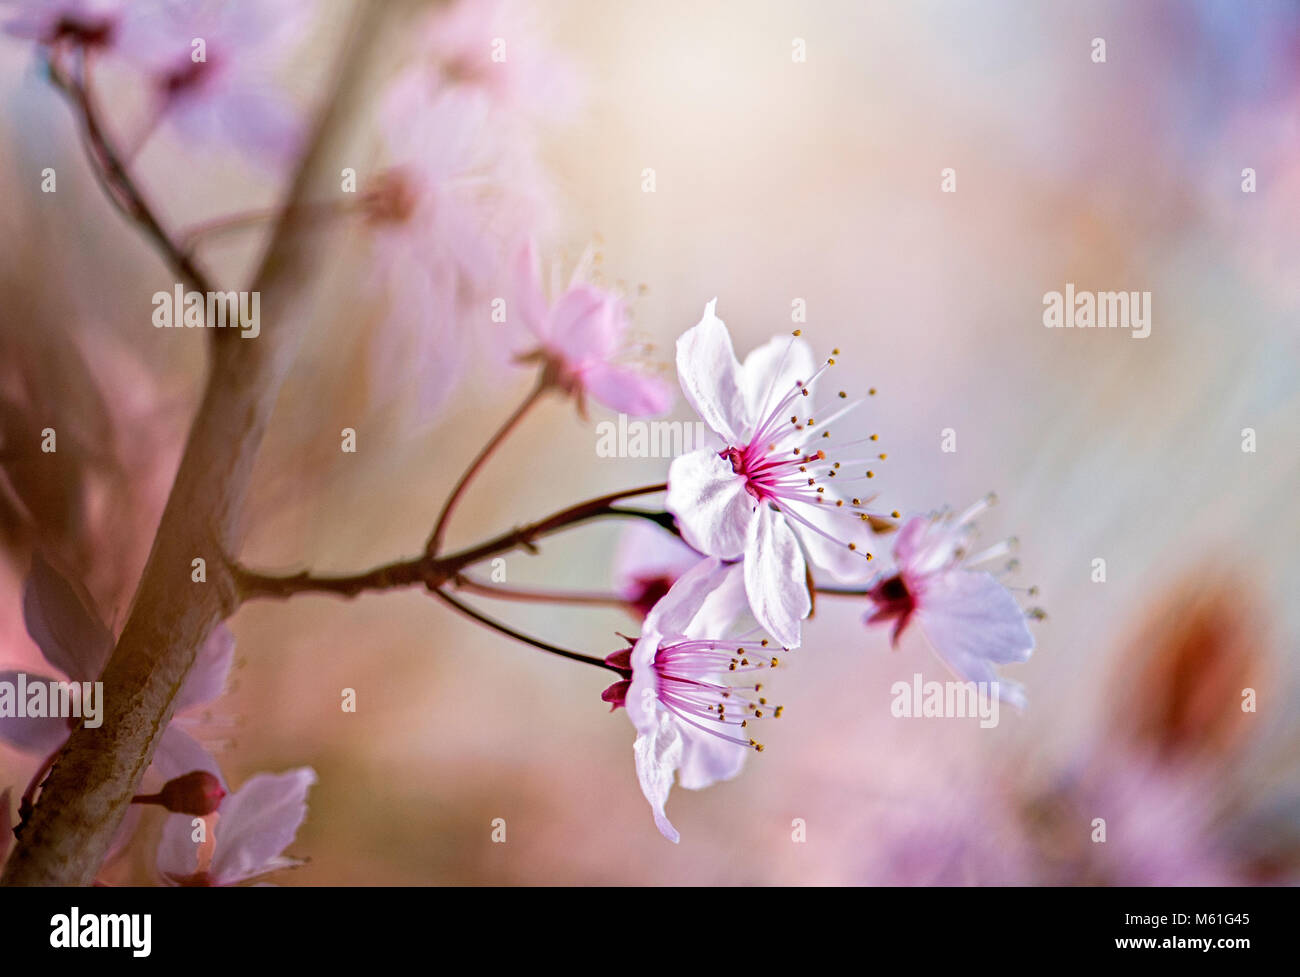 Image en gros plan de la cerise noire à fleurs de printemps fleurs de prunier aussi connu sous le nom de Prunus cerasifera 'Nigra' Banque D'Images